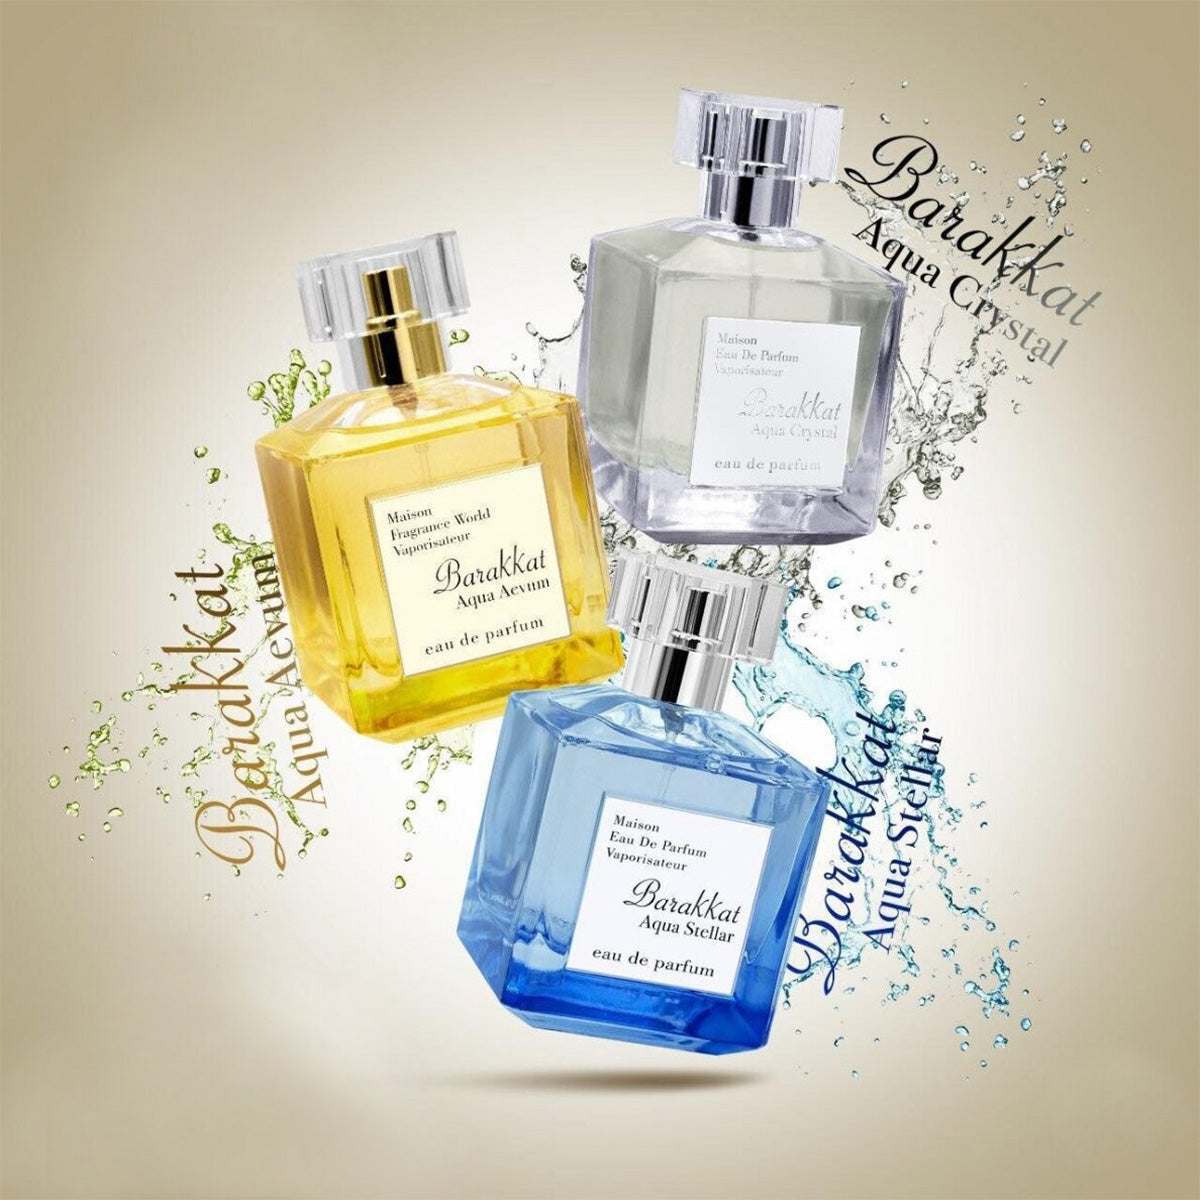 Barakkat Aqua Crystal Maison Eau de Parfum 100ml Fragrance World-Perfume Heaven